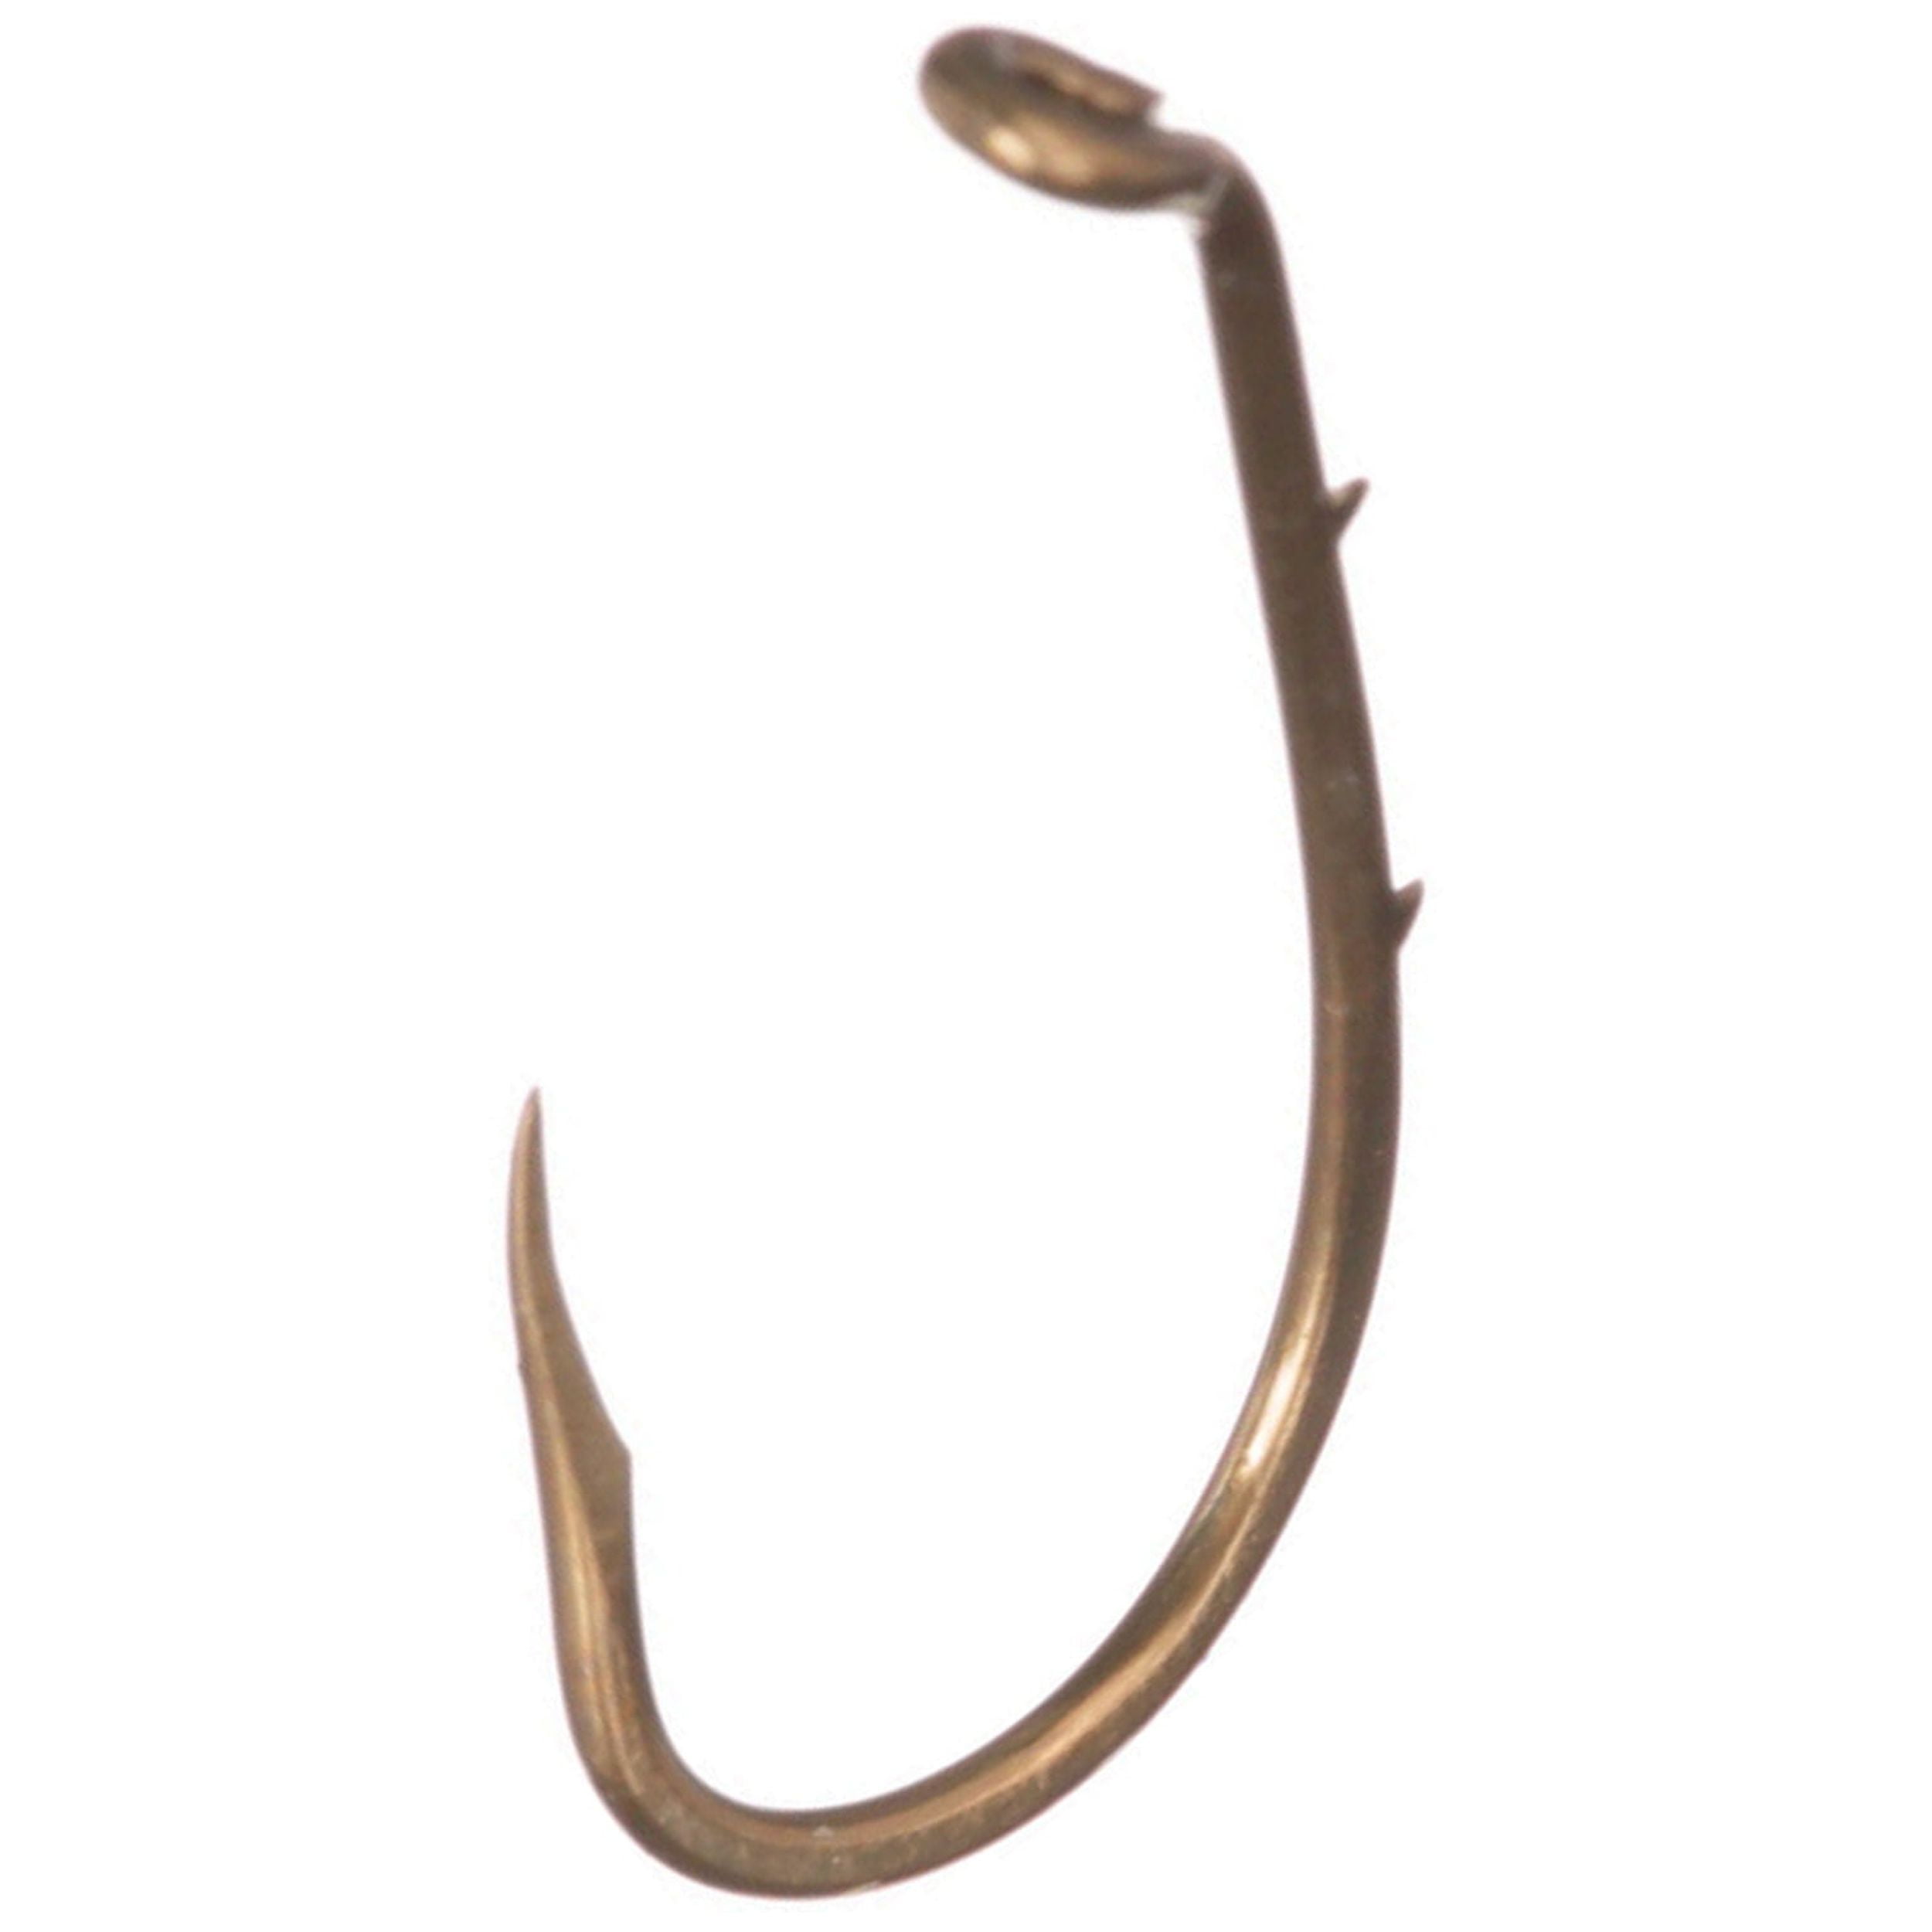 Eagle Claw Lazer Sharp Barbless Baitholder Fishing Hook, Bronze 